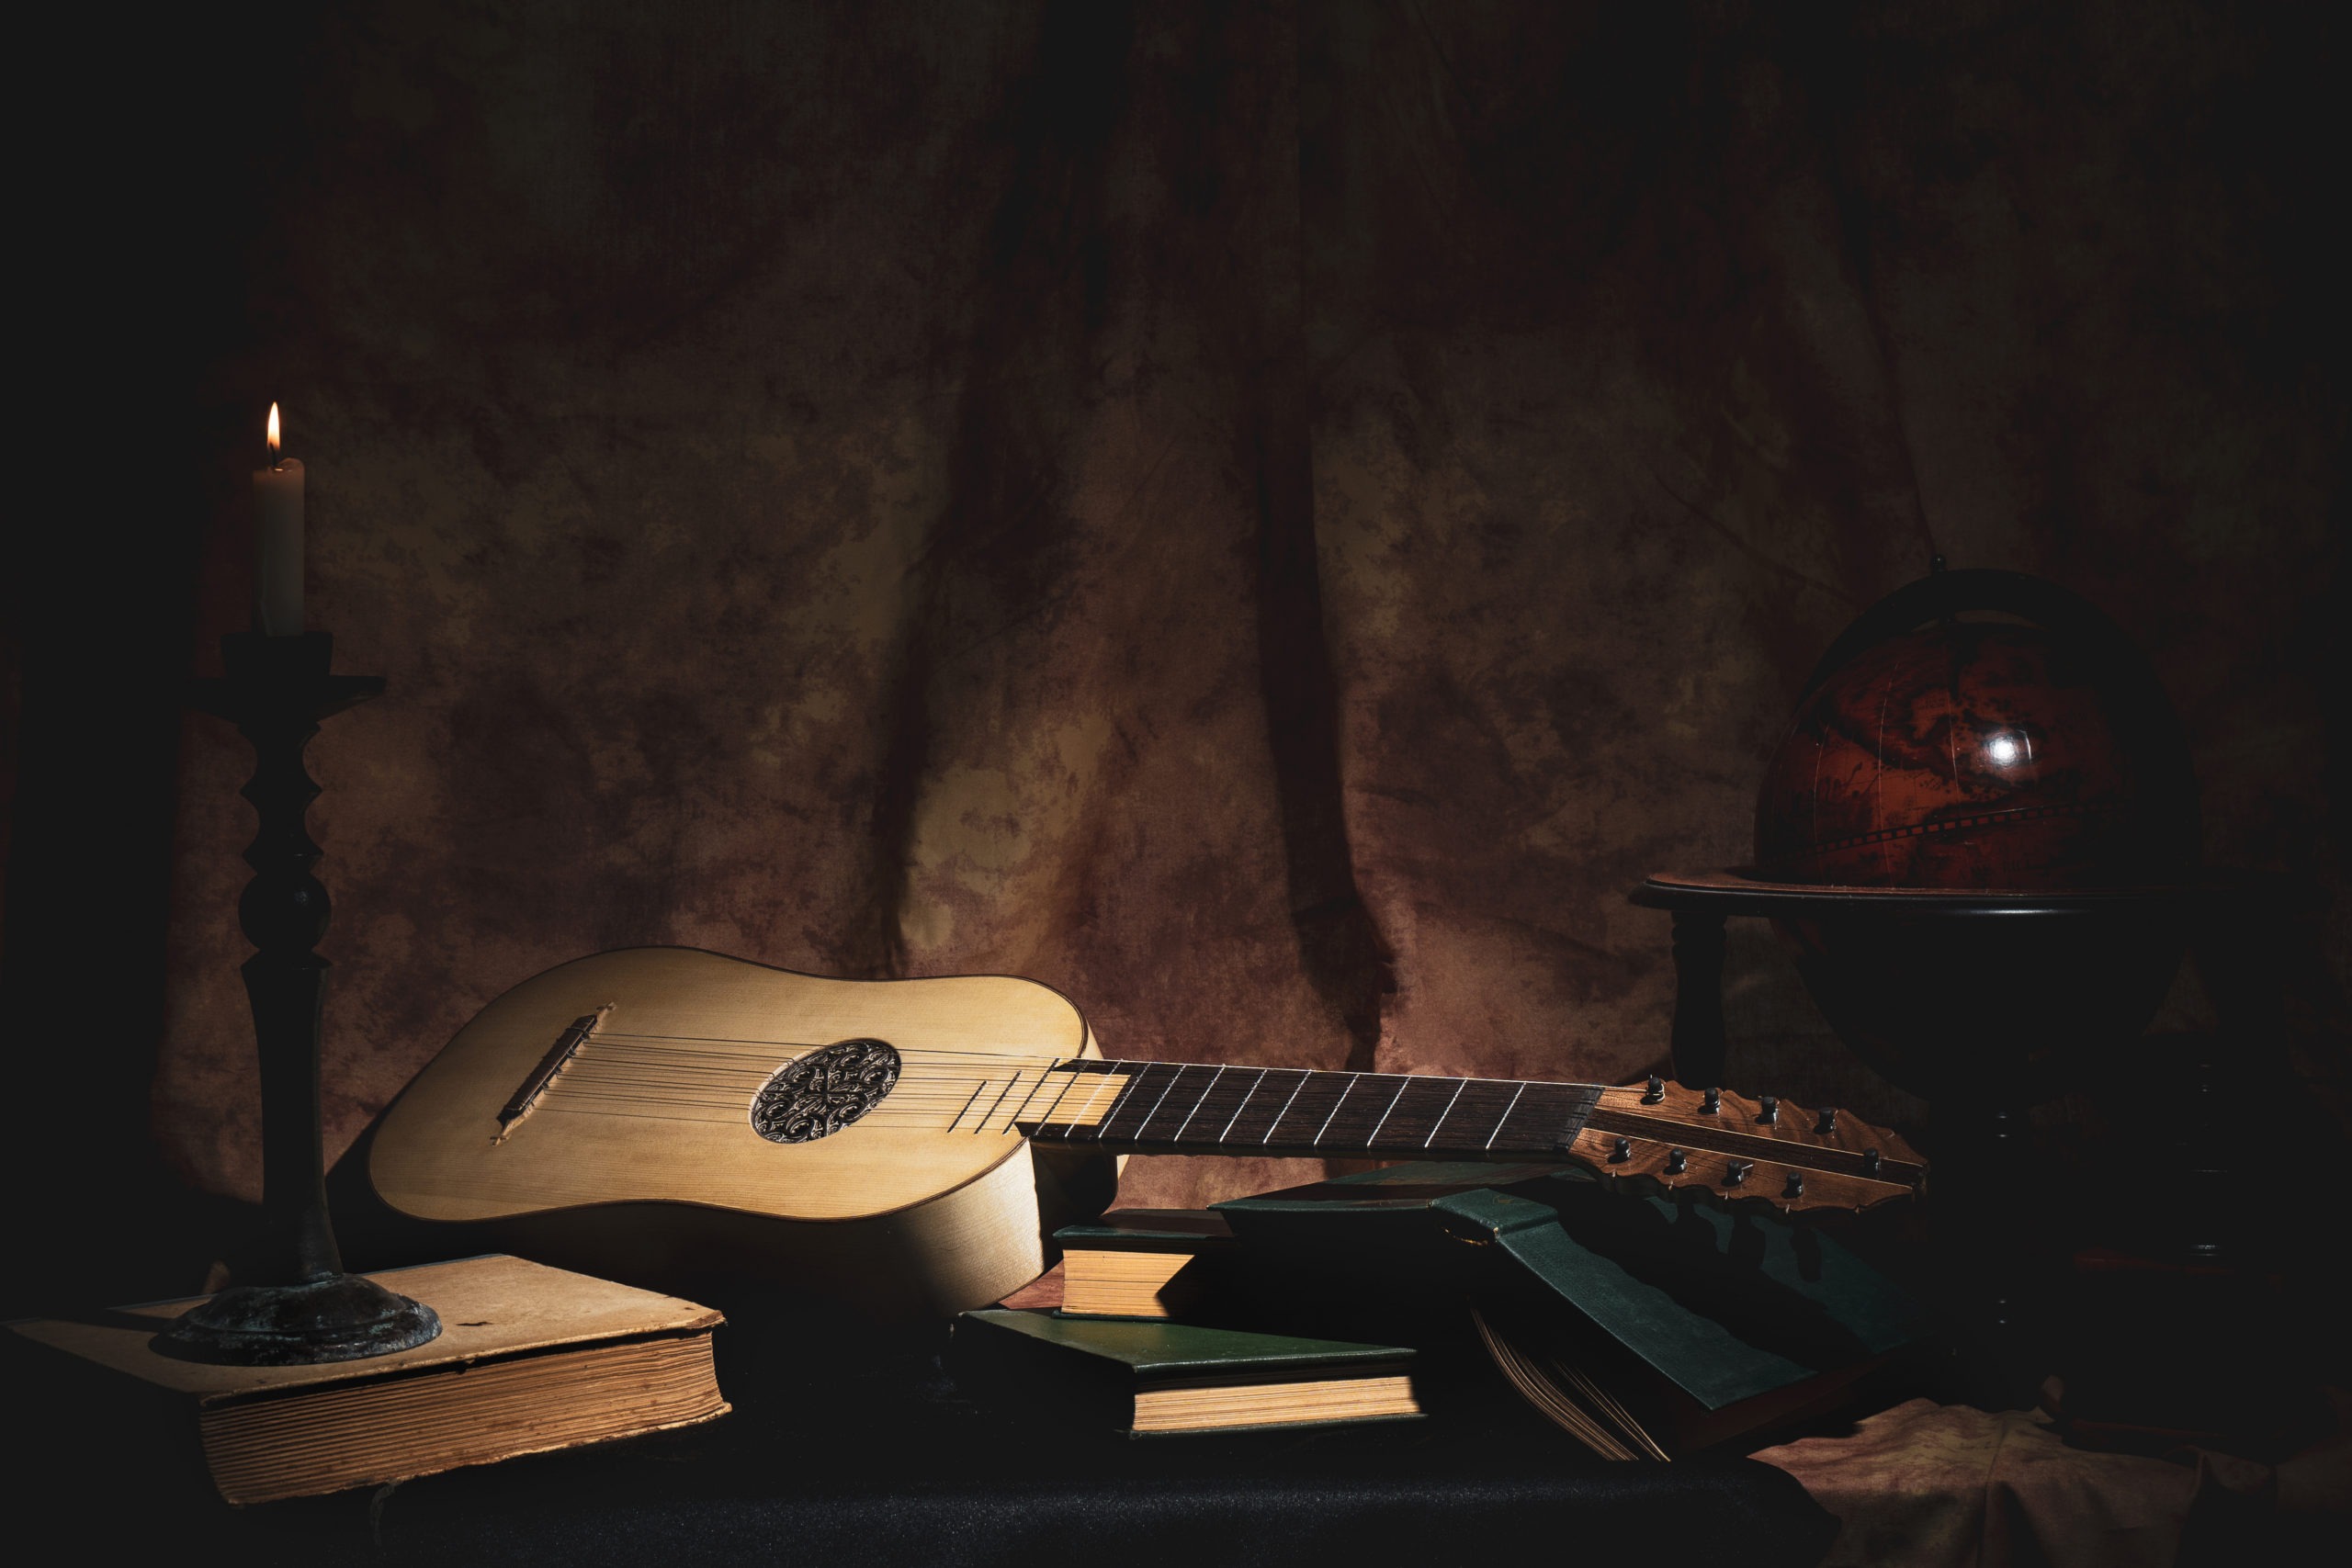 Renaissance guitar in dark background.